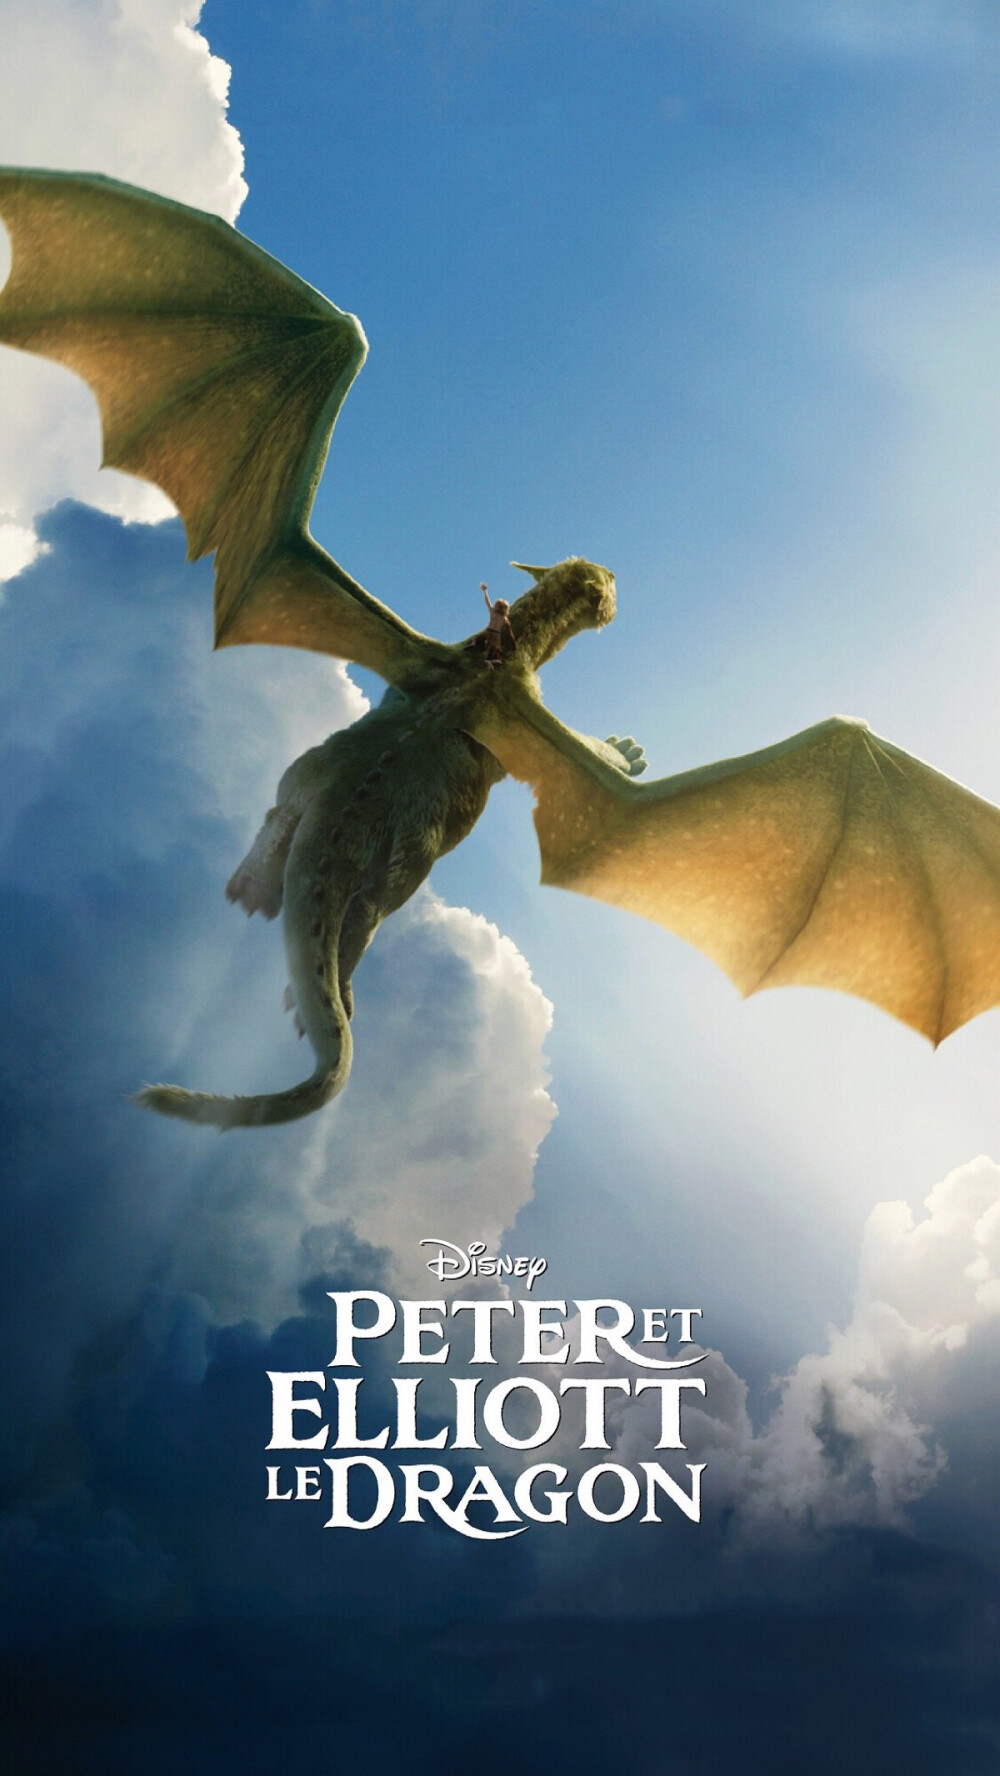 《彼得与龙》电影海报，于2016年8月12日美国上映。讲述一个年轻人为躲避虐待他的养父母而出走，并在逃跑途中遇见了一条龙的故事。